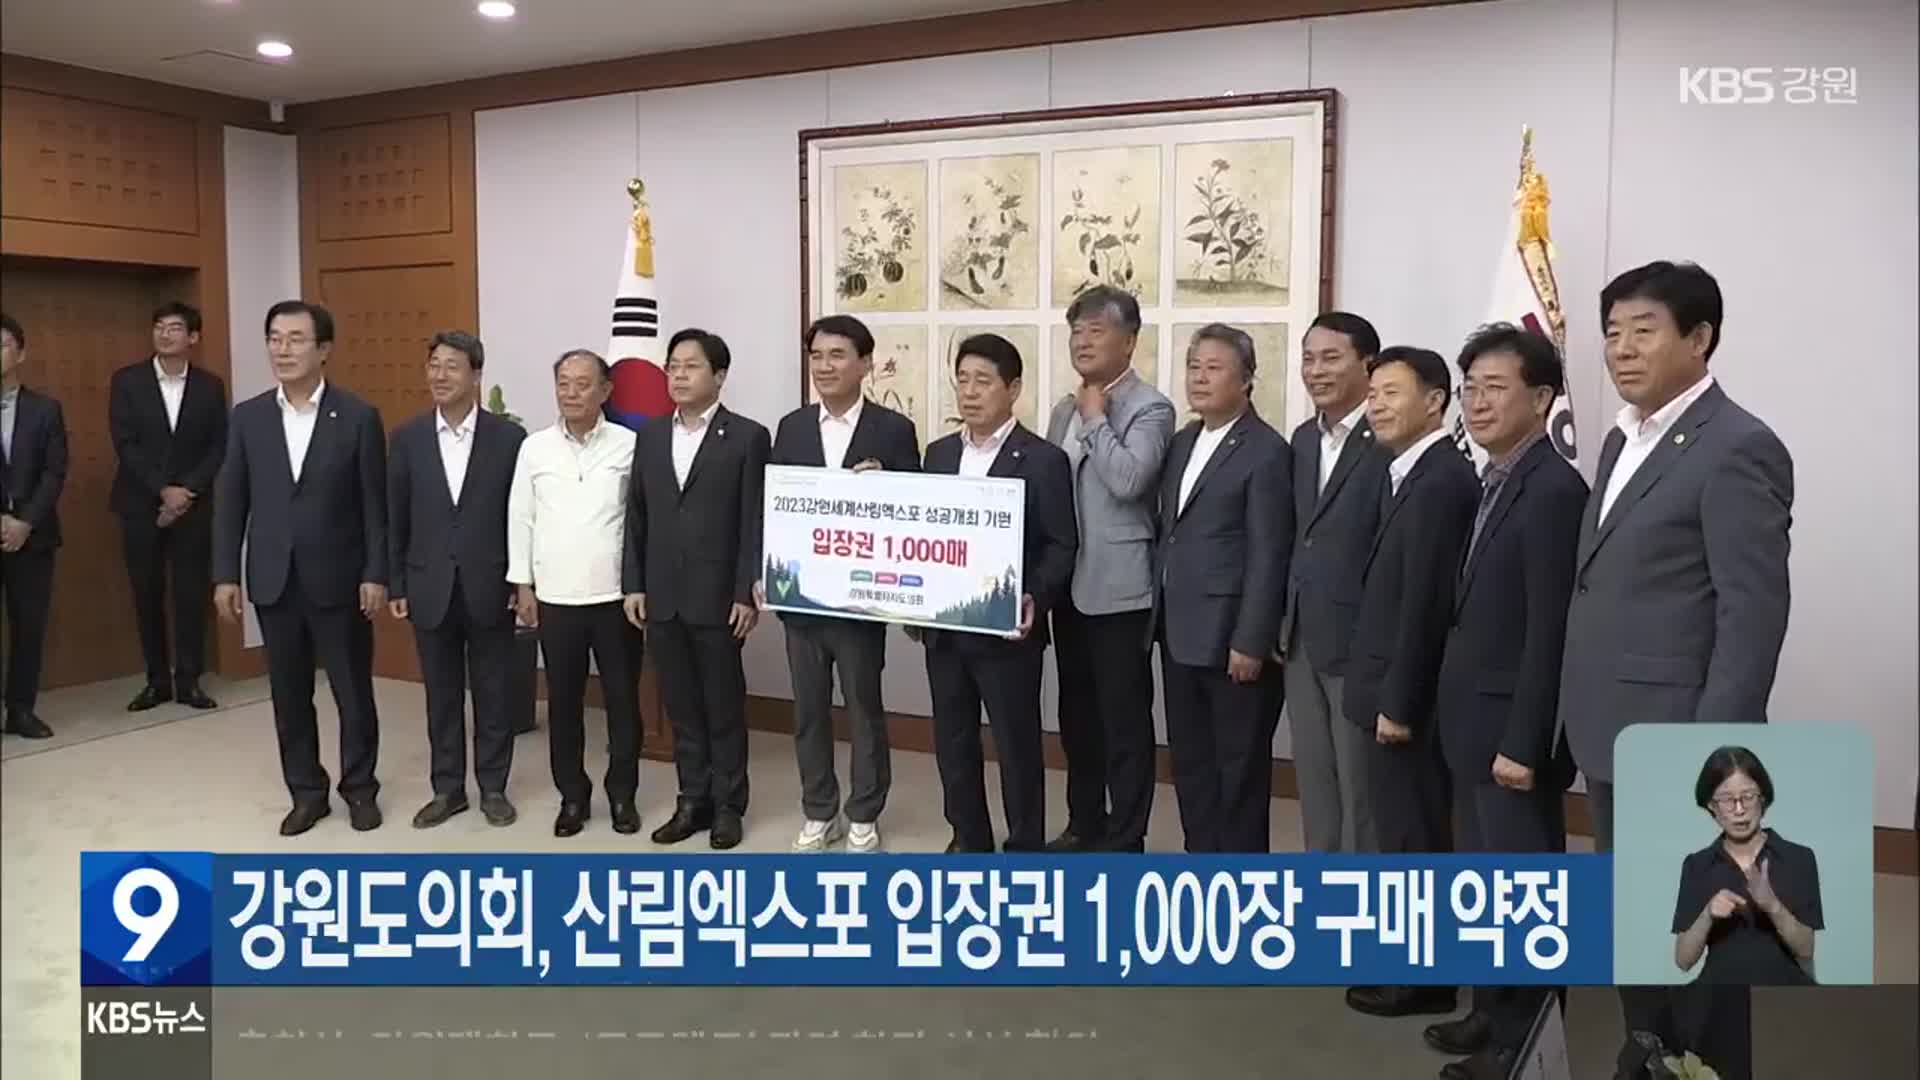 강원도의회, 산림엑스포 입장권 1,000장 구매 약정